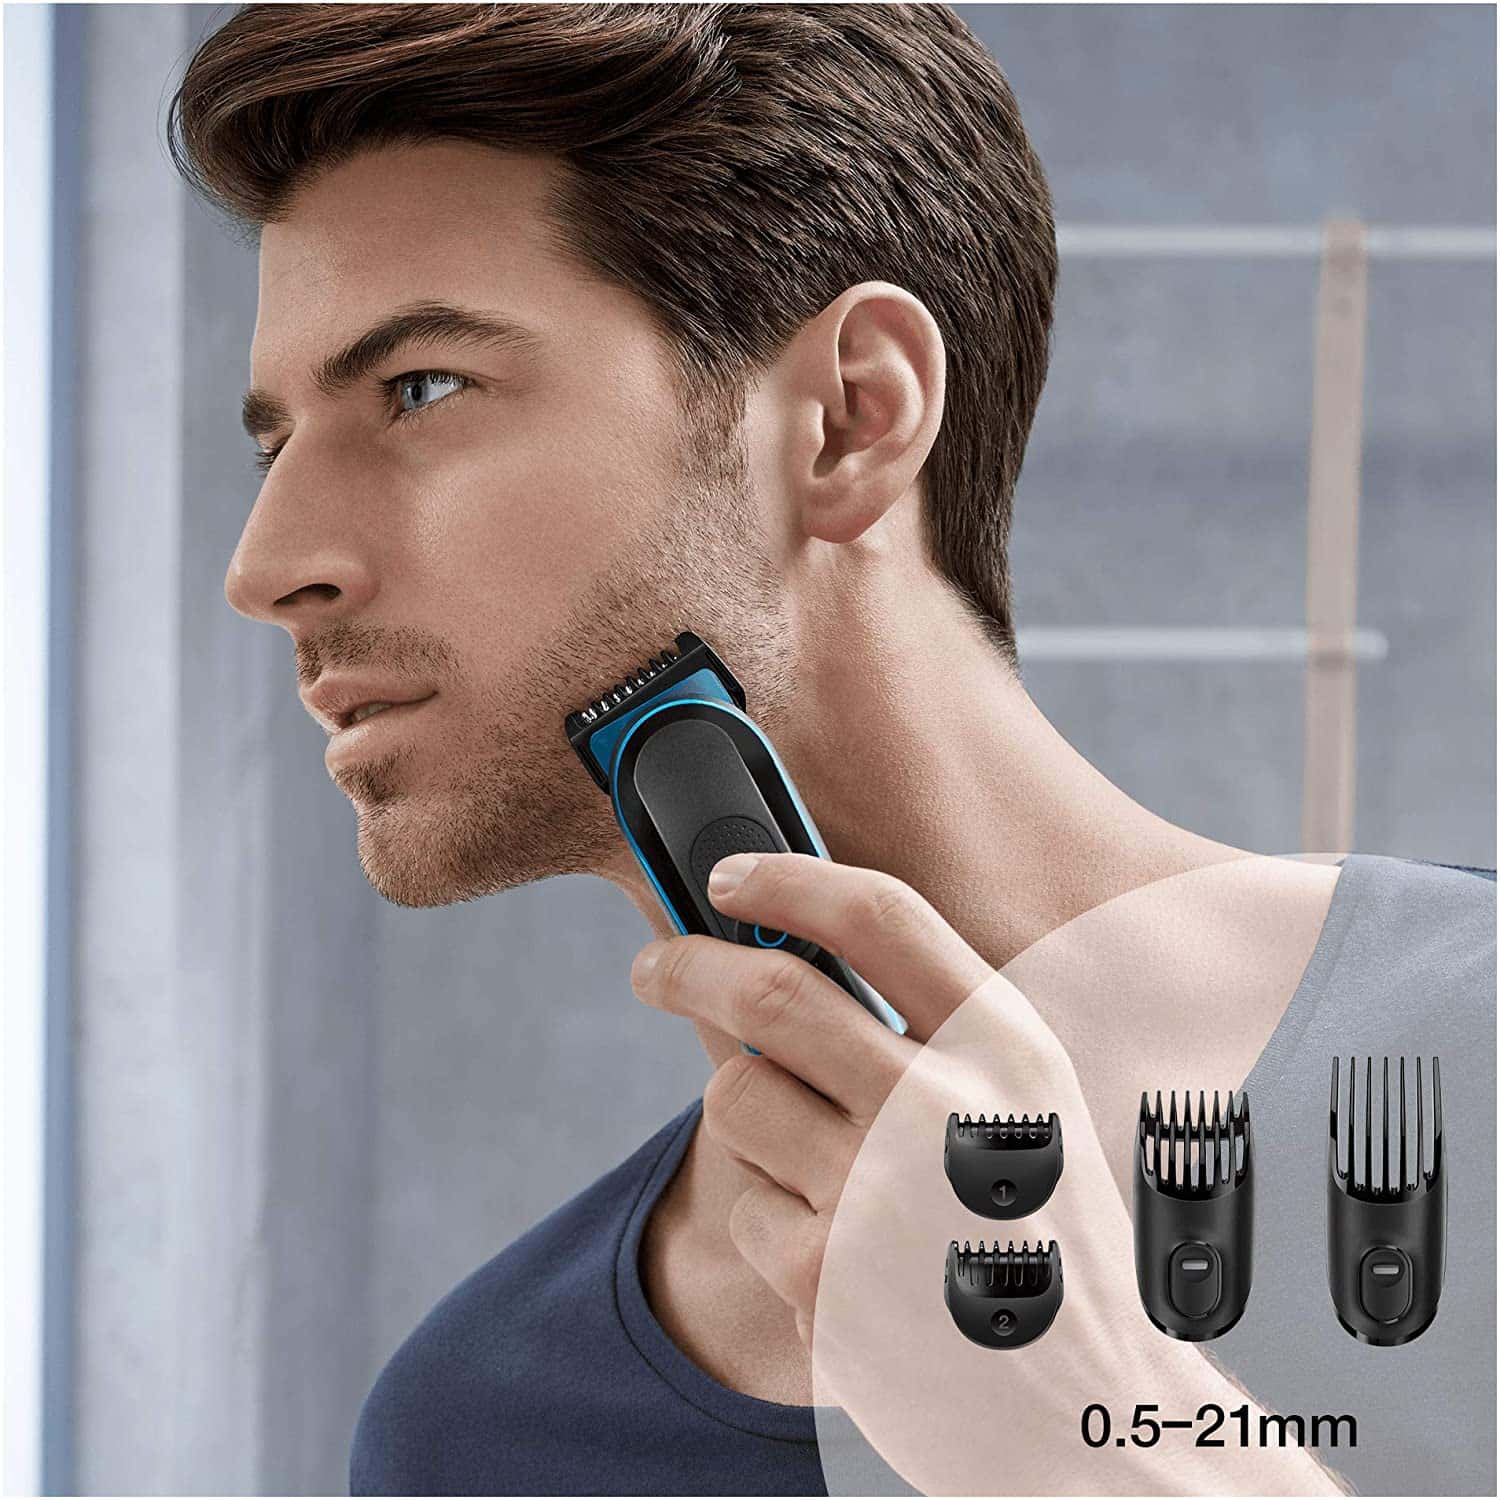 Braun MGK3080 - Set de afeitado multifunción 9 en 1, depiladora masculina, recortadora de barba, cortapelos profesional hombre, negro